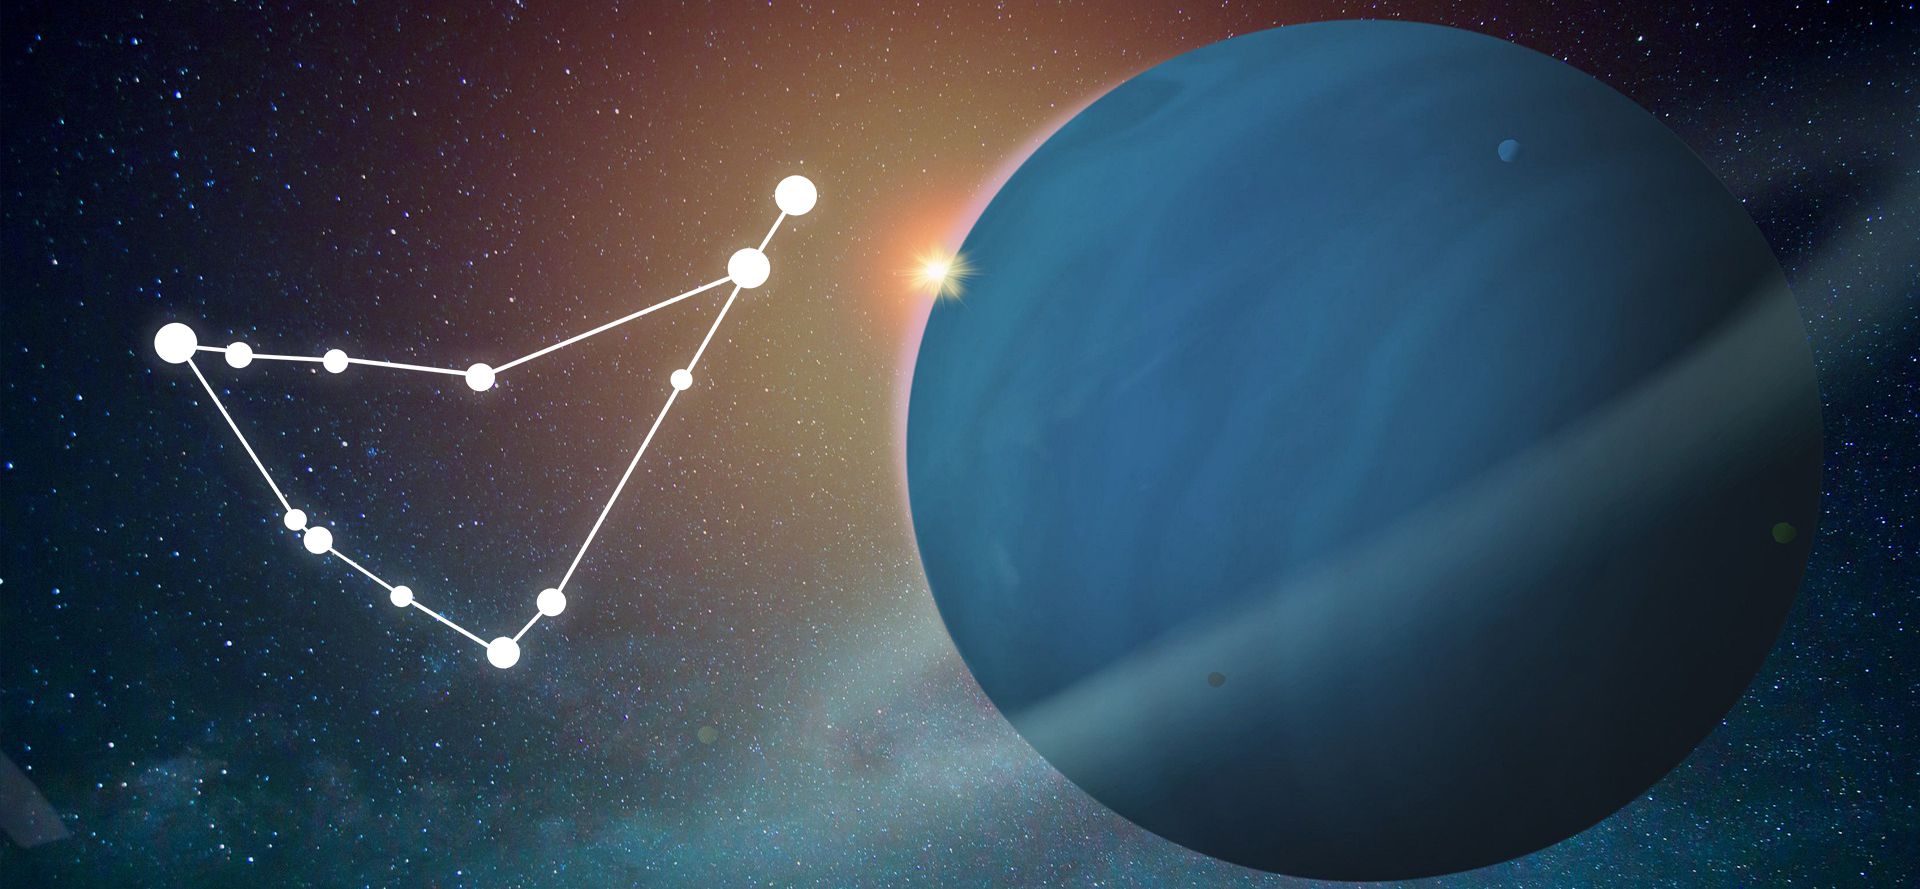 Capricorn constellation and Uranus.